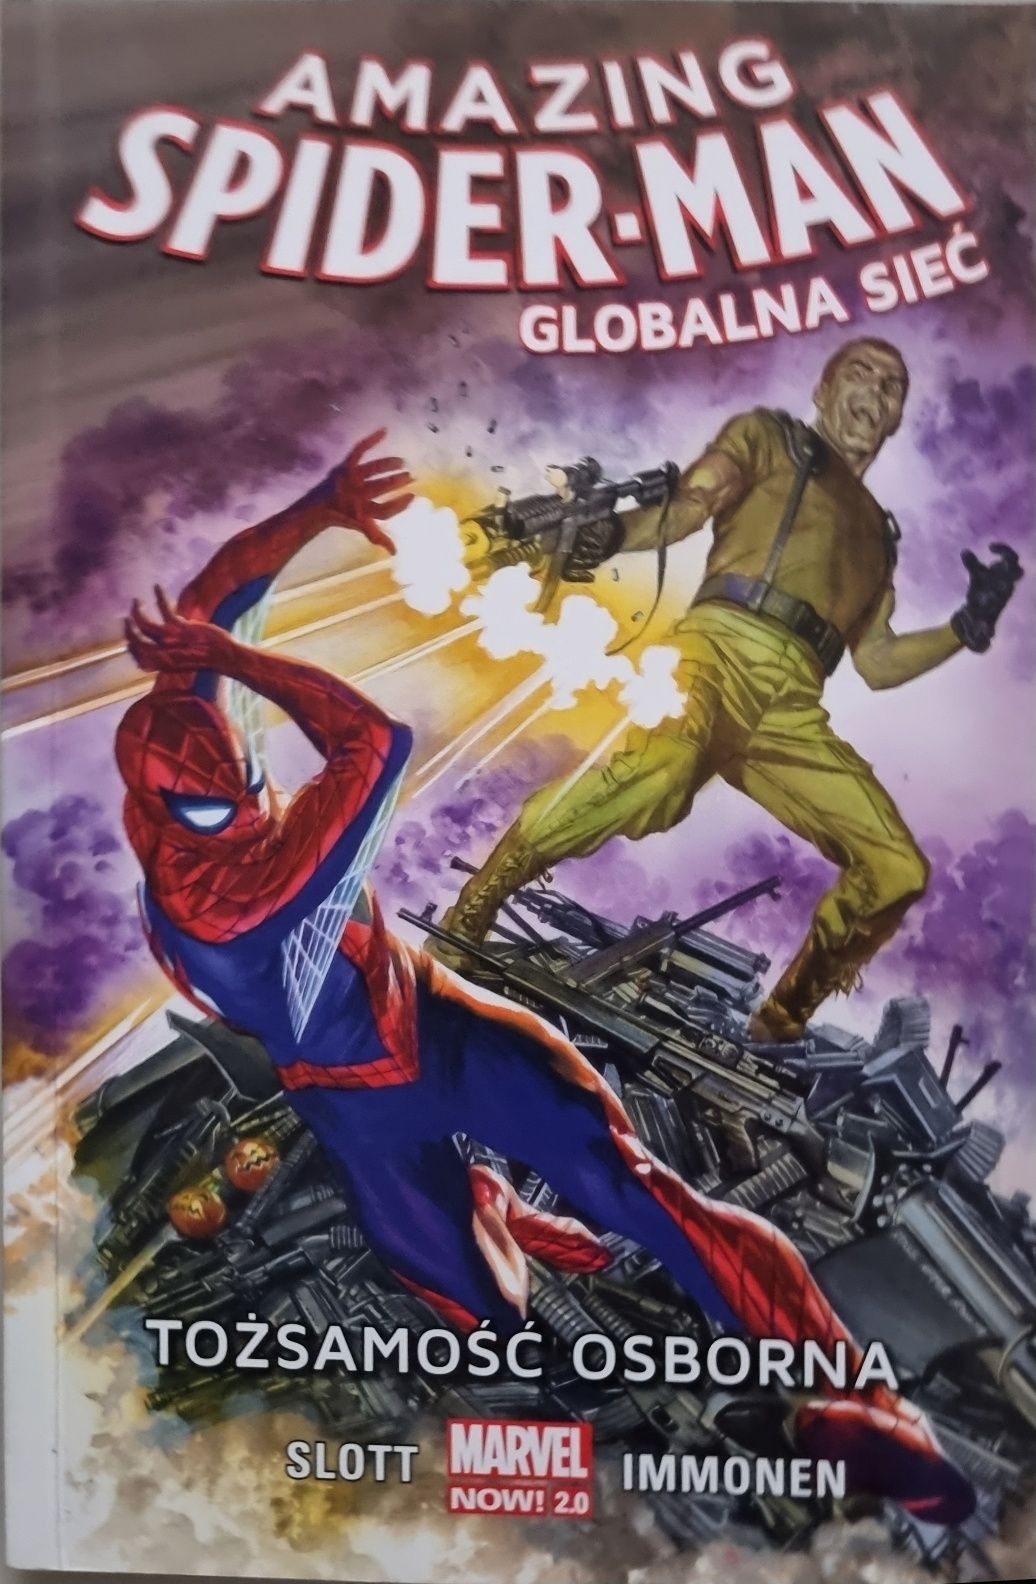 UNIKAT komiks Star Wars w oprawie Spider-Man'a